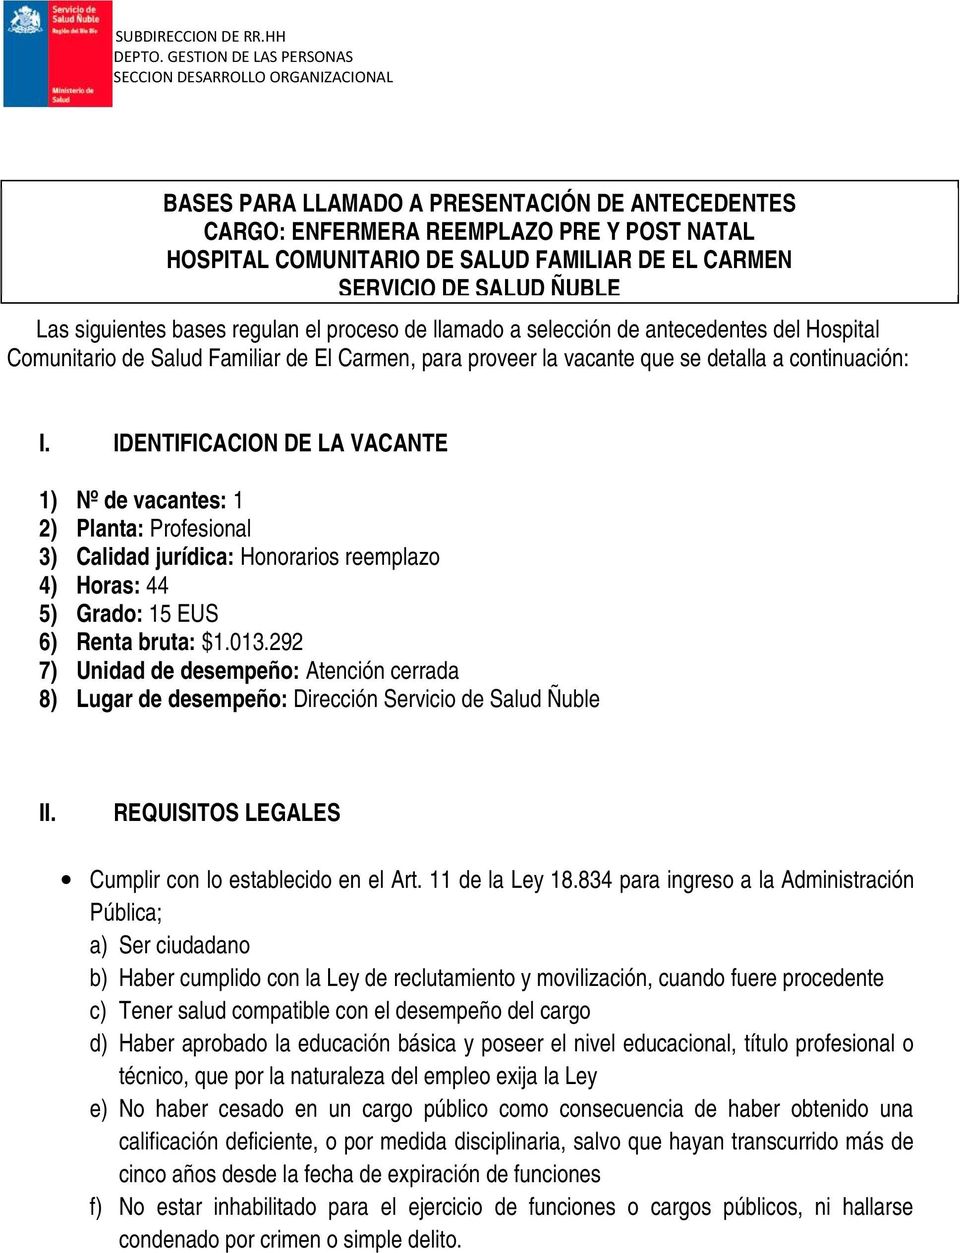 CARMEN SERVICIO DE SALUD ÑUBLE Las siguientes bases regulan el proceso de llamado a selección de antecedentes del Hospital Comunitario de Salud Familiar de El Carmen, para proveer la vacante que se